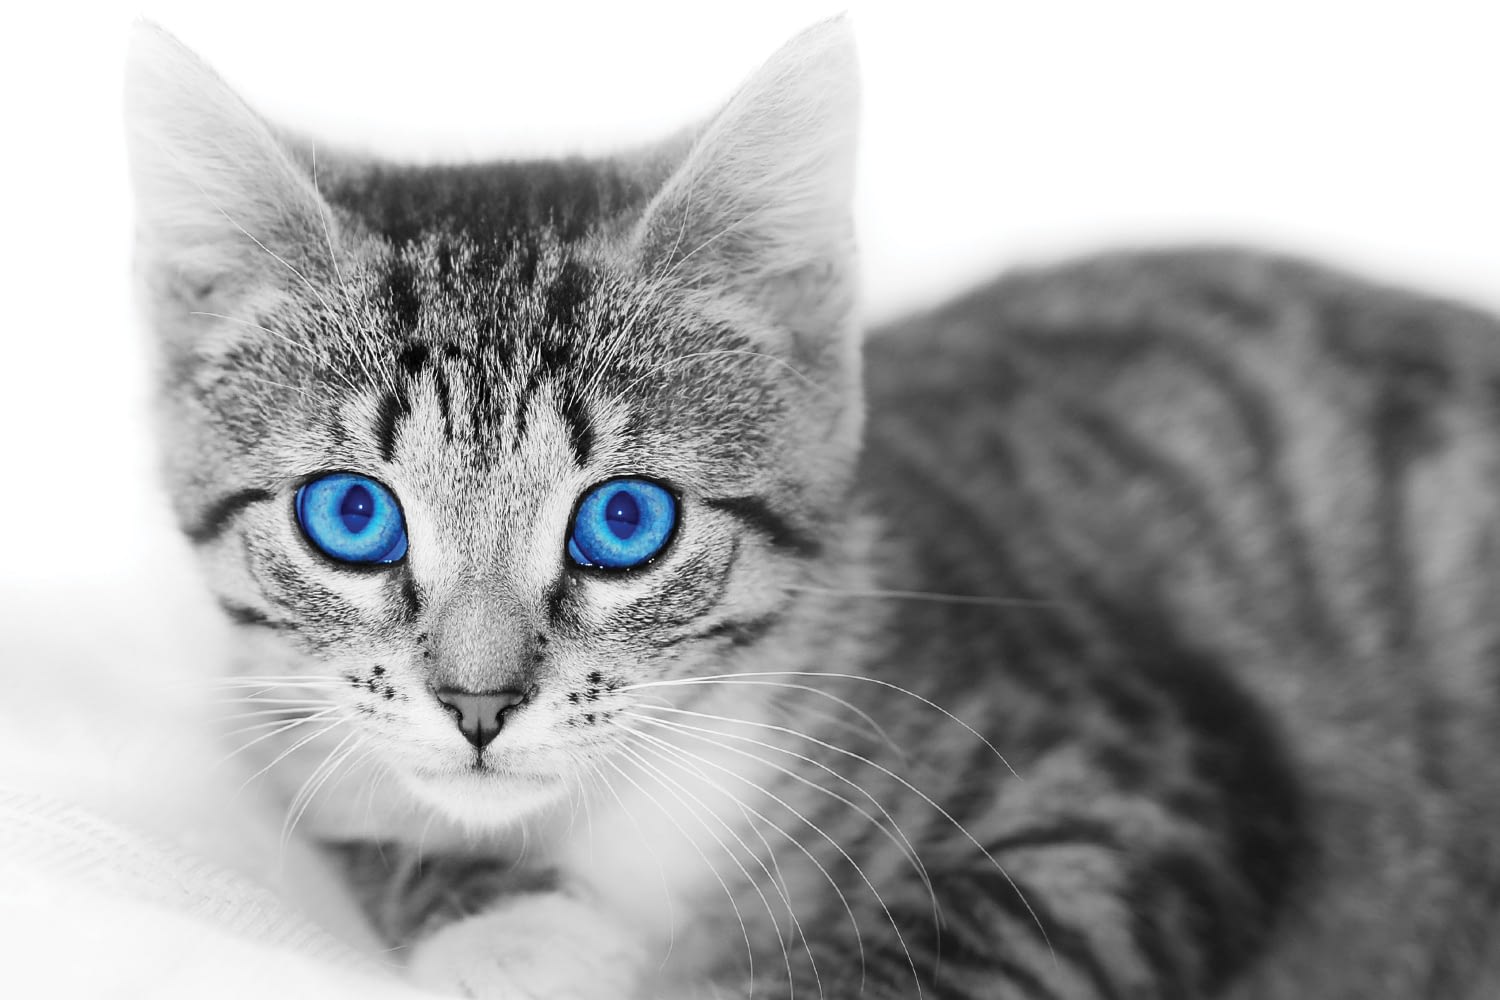 Erkek Kedi Erkek Kedinin Ustune Neden Cikar Kedi Hayvanlari Blog